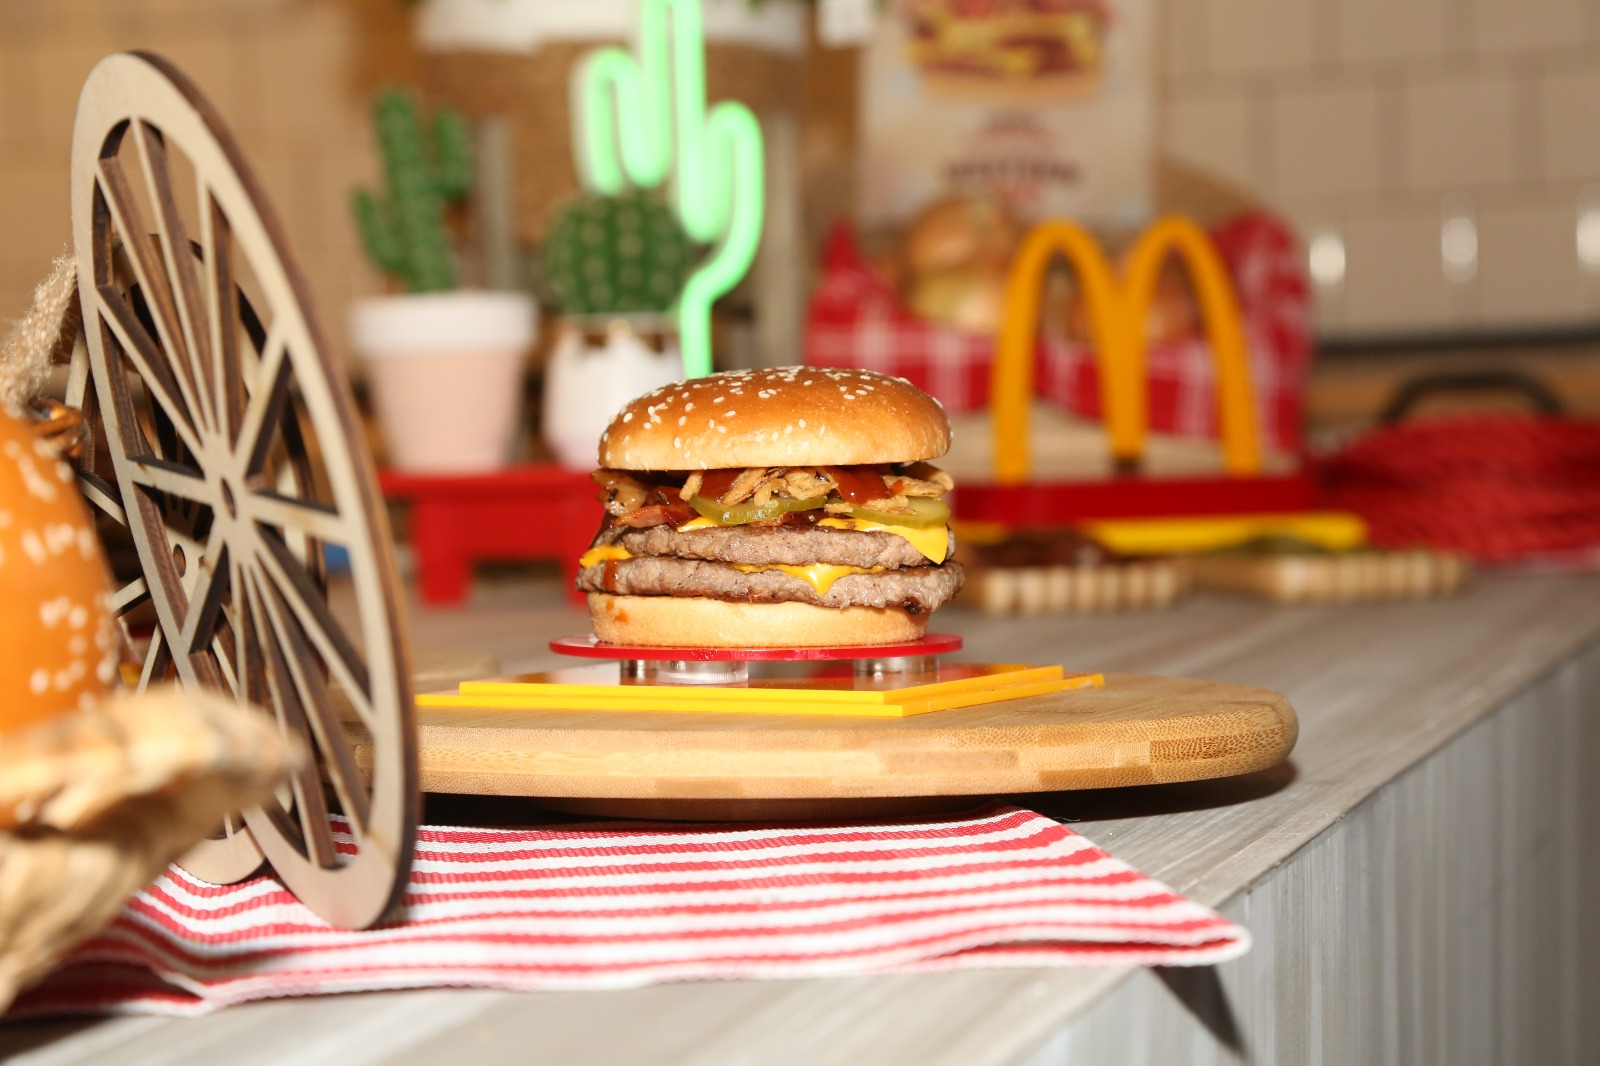 McDonald’s celebra el lanzamiento oficial de su nueva hamburguesa “Cuarto de libra Western BBQ”